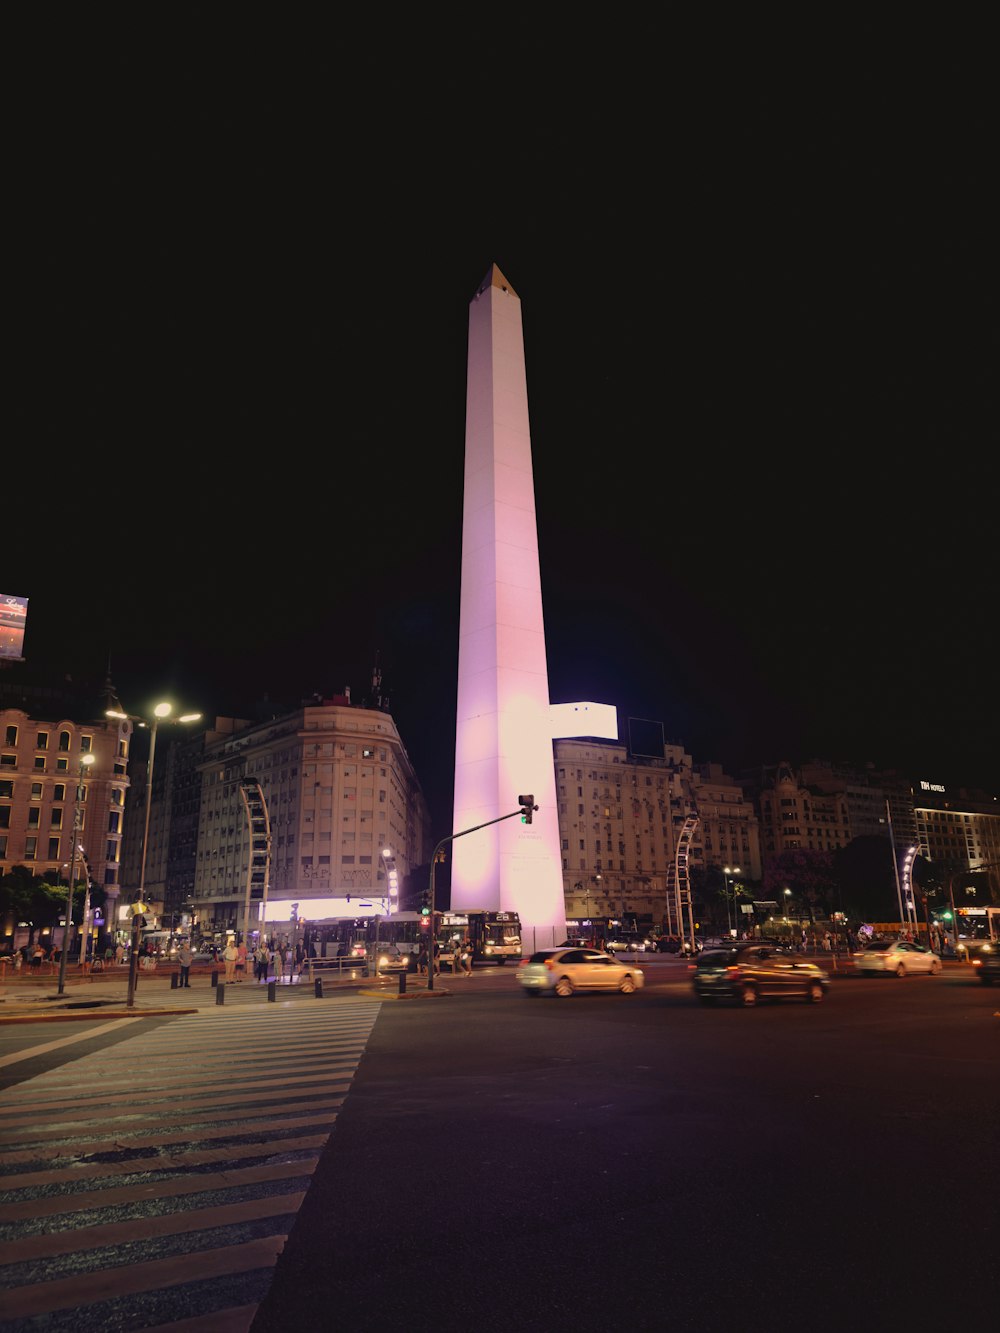 Un alto obelisco iluminado por la noche en una ciudad